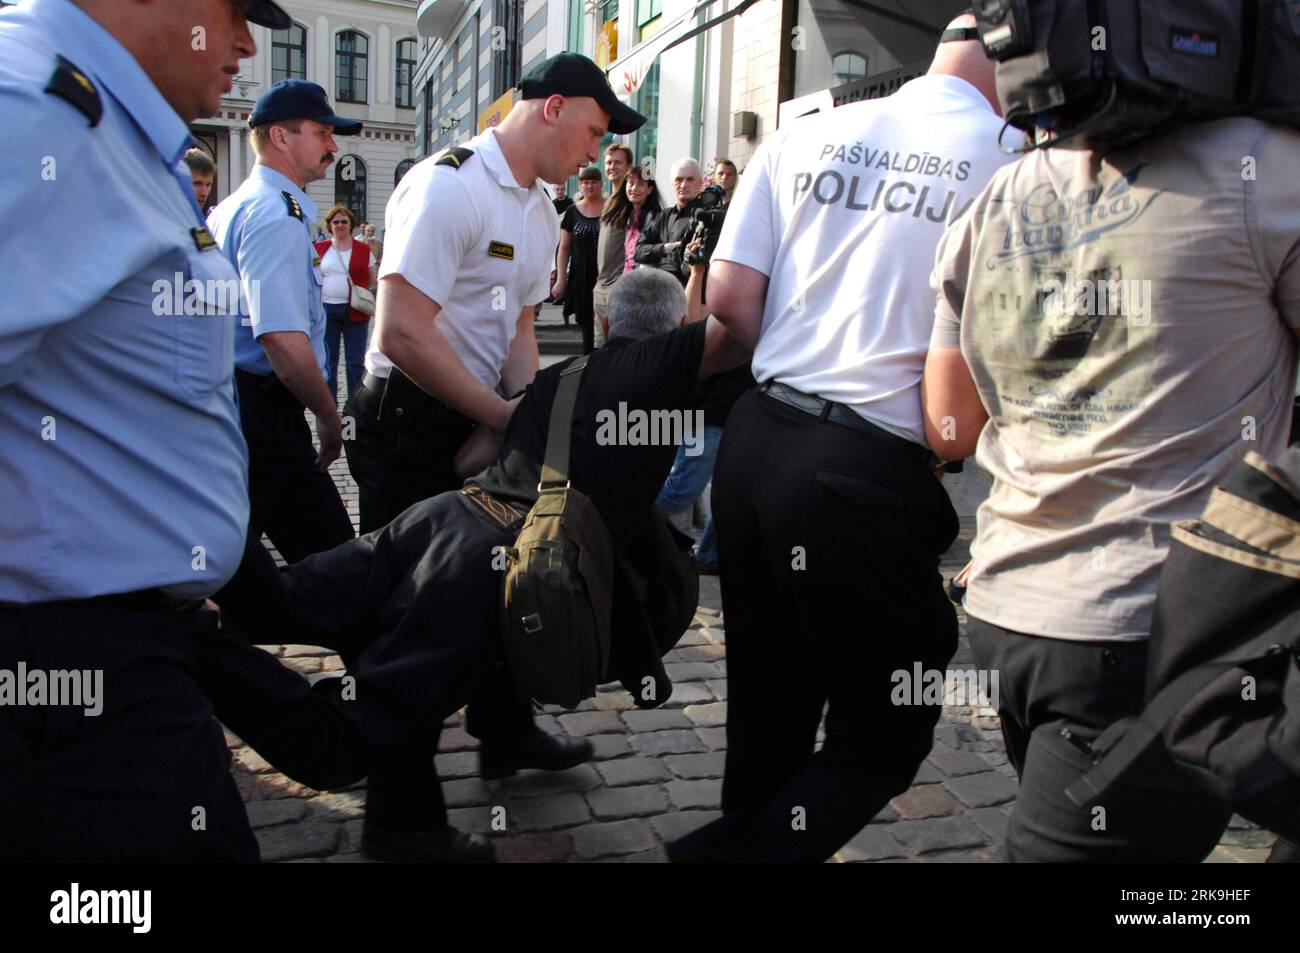 Bildnummer : 54197348 Datum : 01.07.2010 Copyright : imago/Xinhua (100702) -- RIGA, 2 juillet 2010 (Xinhua) -- des policiers lettons arrêtent un manifestant alors qu'il tentait d'assister à une manifestation pour commémorer le jour où les troupes allemandes ont libéré Riga des Soviétiques en 1941, à Riga, Lettonie, le 1 juillet 2010. (Xinhua/Yang Dehong)(axy) (1)LETTONIE-RIGA-MANIFESTATION-ARRESTATION PUBLICATIONxNOTxINxCHN Politik Lettland Demo Protest kbdig xcb 2010 quer o0 Polizei, Verhaftung Bildnummer 54197348 Date 01 07 2010 Copyright Imago XINHUA Riga juillet 2 2010 XINHUA policiers lettons arrêtent un manifestant alors qu'il essayait Banque D'Images